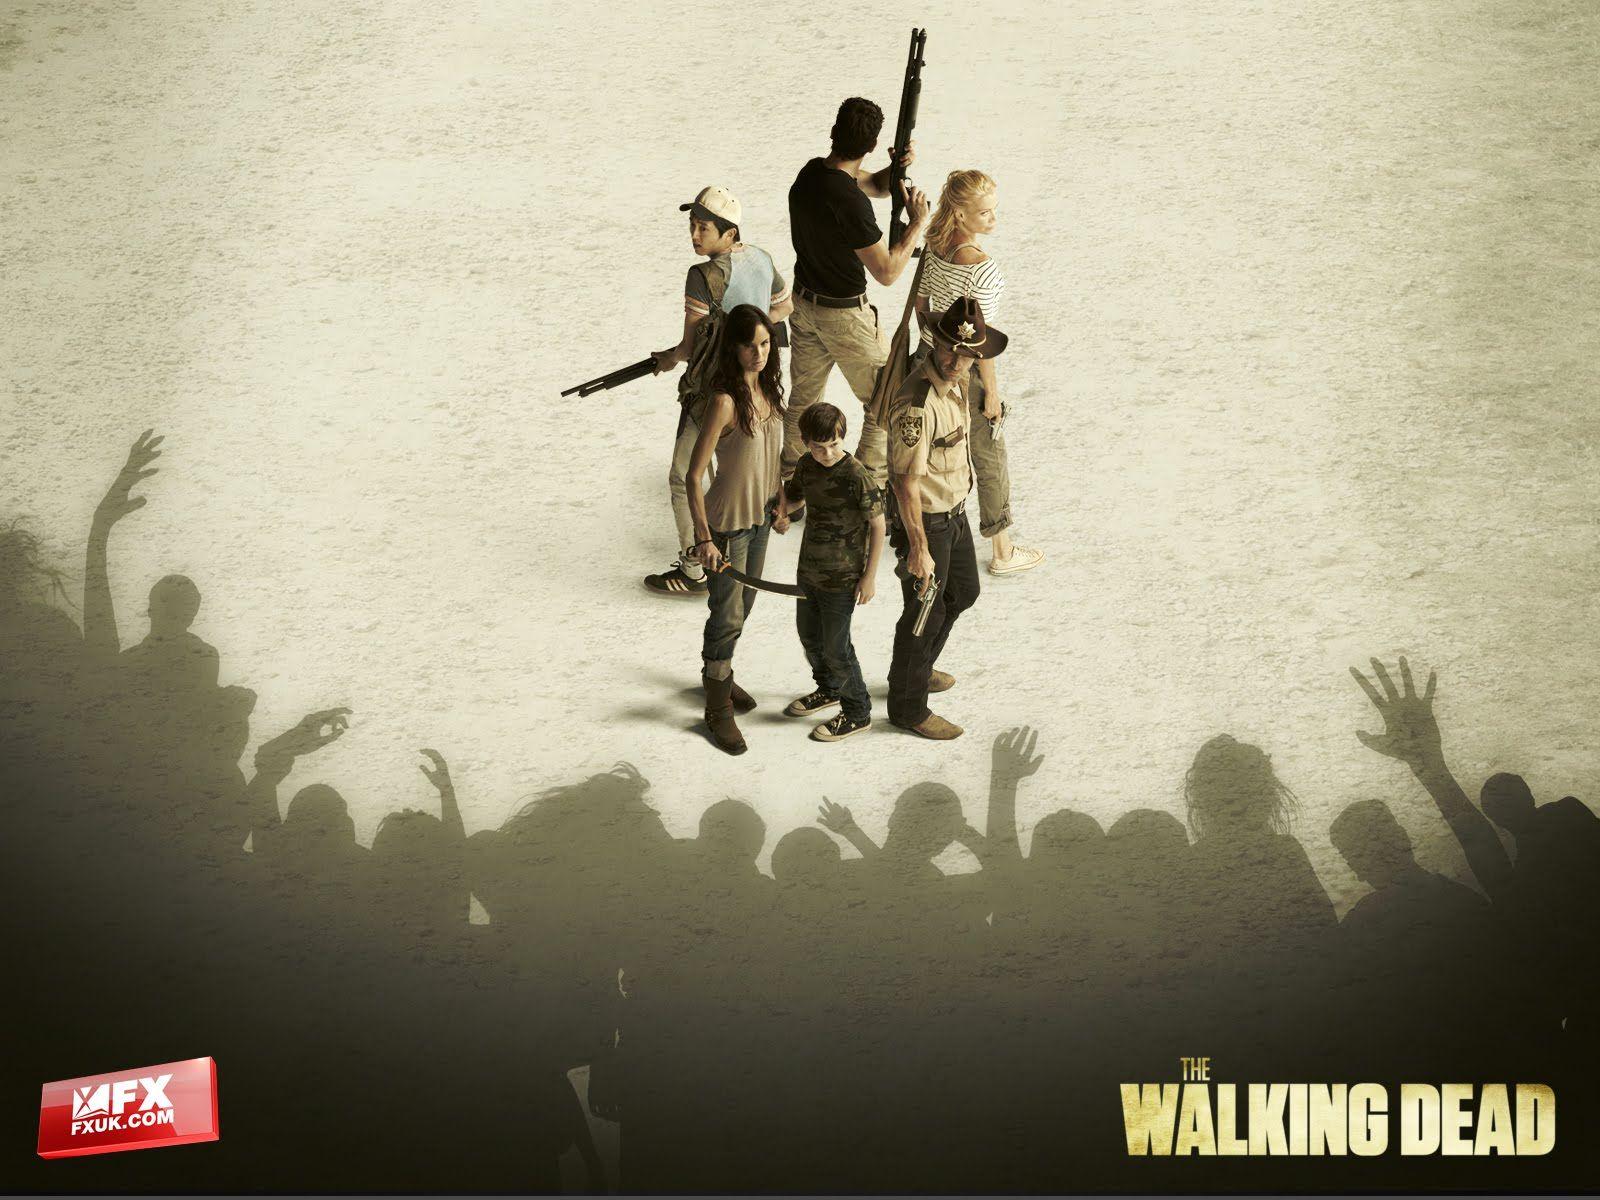 The Walking Dead 2 UK Wallpaper